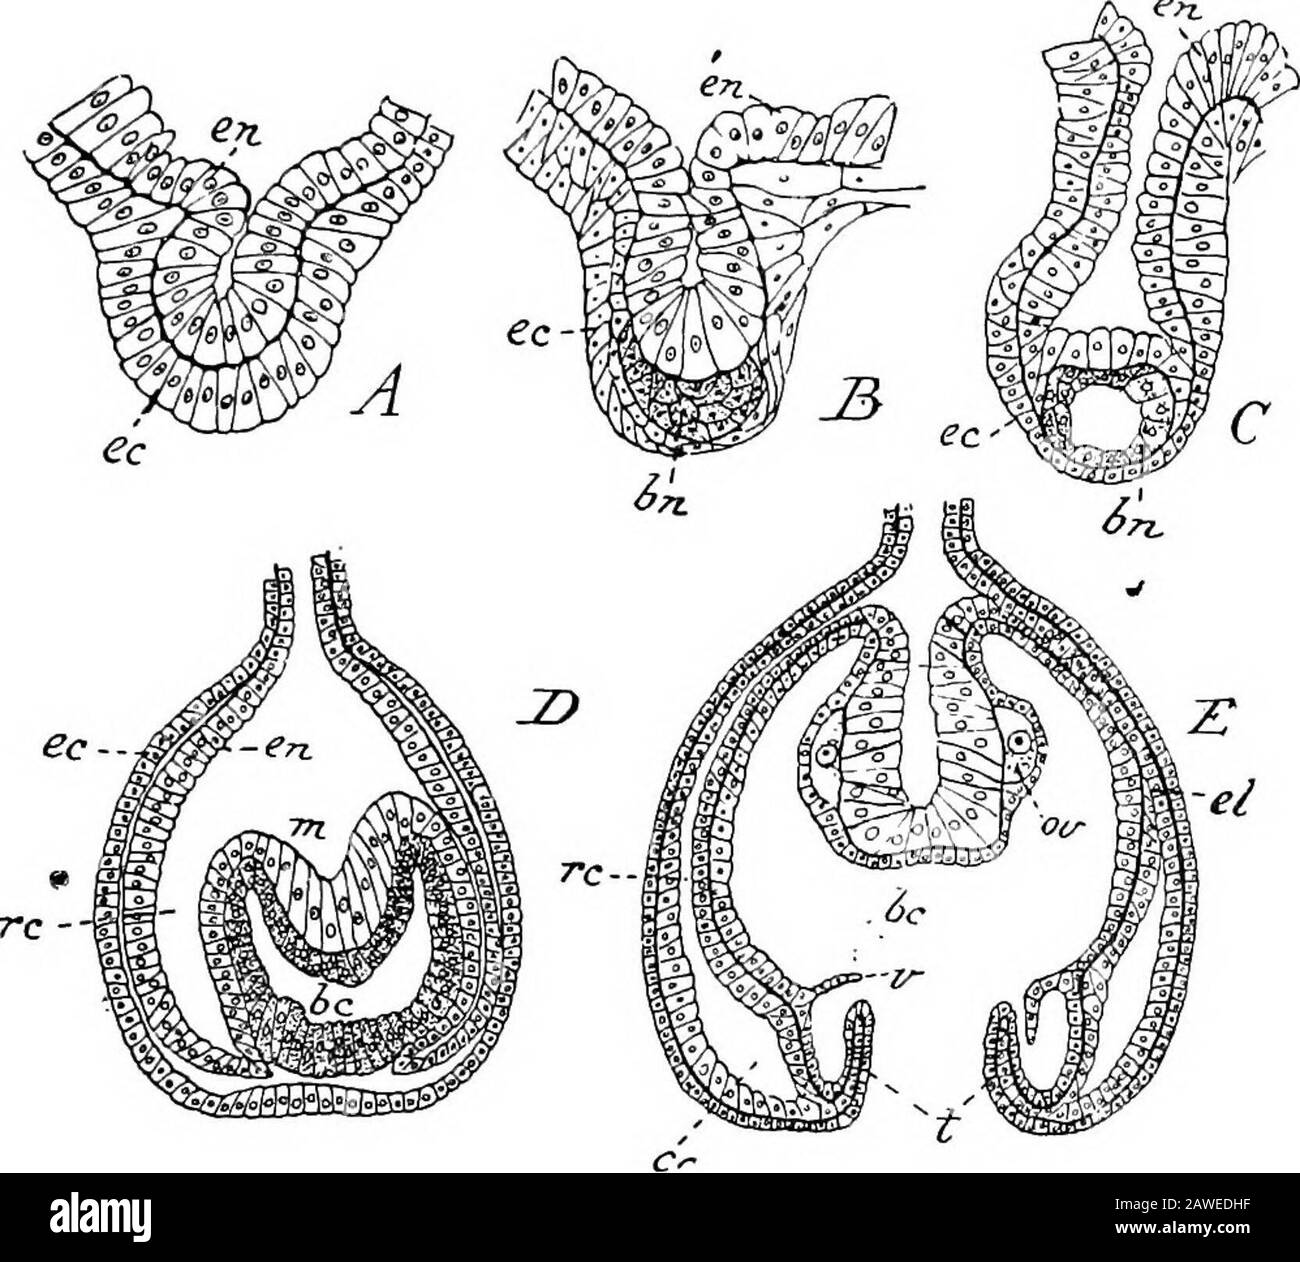 Un'introduzione allo studio dell'anatomia comparata degli animali . tentacolo di Ry hasan ocellus alla sua base, ma solo otto - cioè gli adradiali - hanno otocisti in aggiunta agli ocelli. La presenza di otocistson il margine dell'ombrello è caratteristico del gruppo di Hydromedusse noto come Leptomedusce. Nella stretta-alliedAnthomedusa gli ocelli sono sempre presenti, le otocisti mai. Fig. 51, C, è una rappresentazione schematica di una sezione medianlongitudinale attraverso la medusa di Obelia. Si pregherà che la maggior parte dell'ombrello è costituito dalla gelatina o mesogloea greatlyaddensata. L'ex-umbre Foto Stock